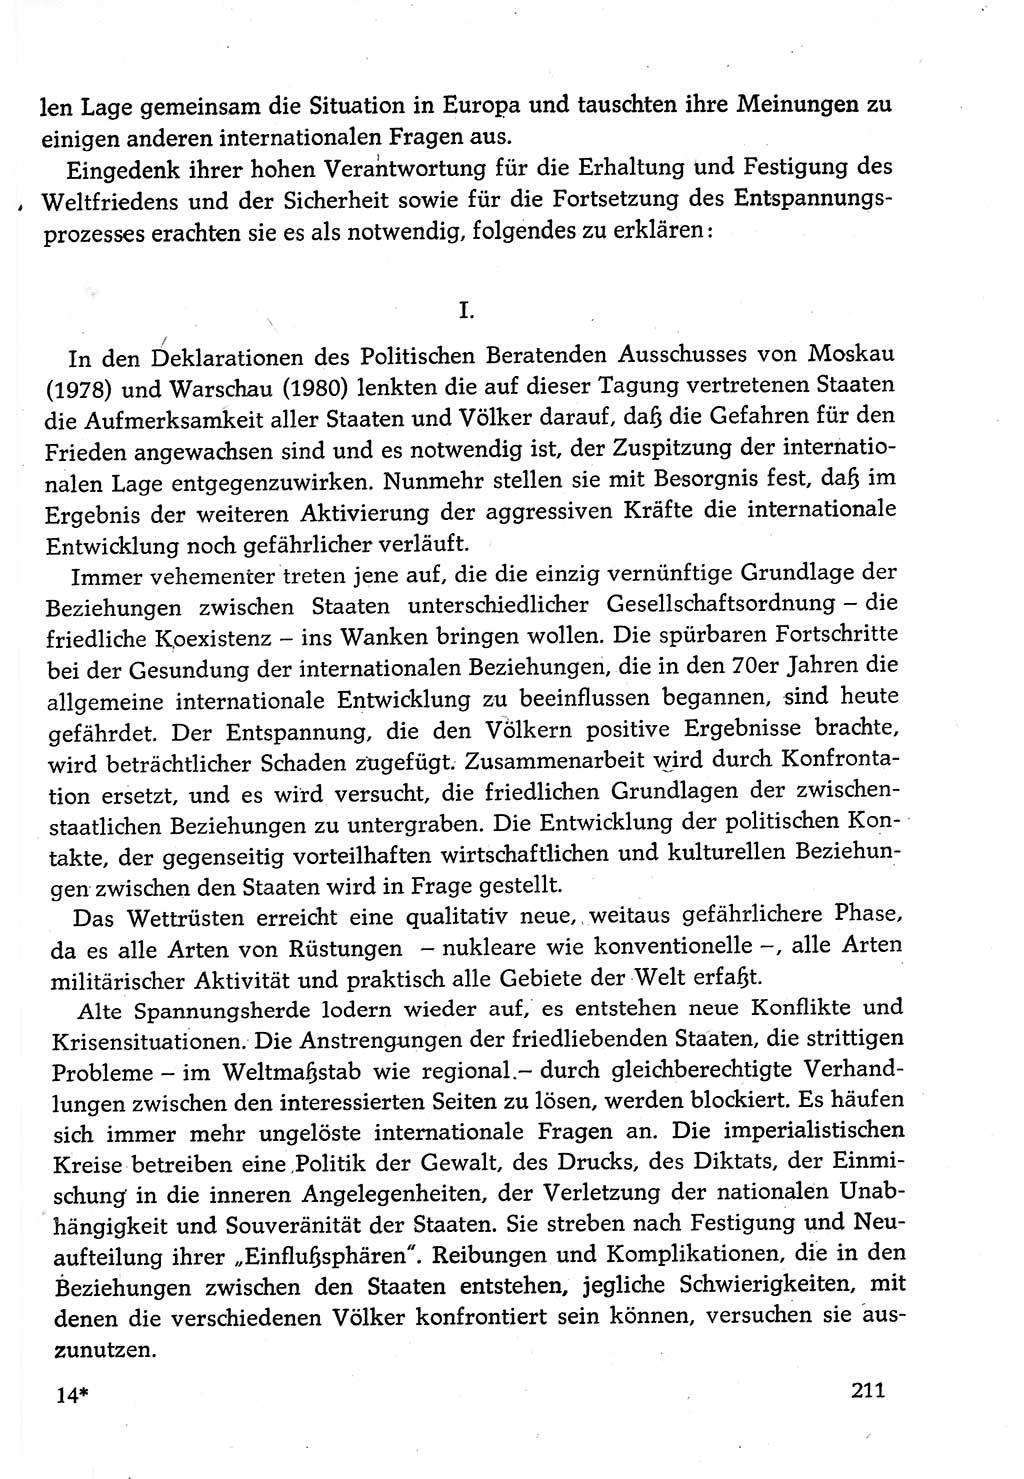 Dokumente der Sozialistischen Einheitspartei Deutschlands (SED) [Deutsche Demokratische Republik (DDR)] 1982-1983, Seite 211 (Dok. SED DDR 1982-1983, S. 211)